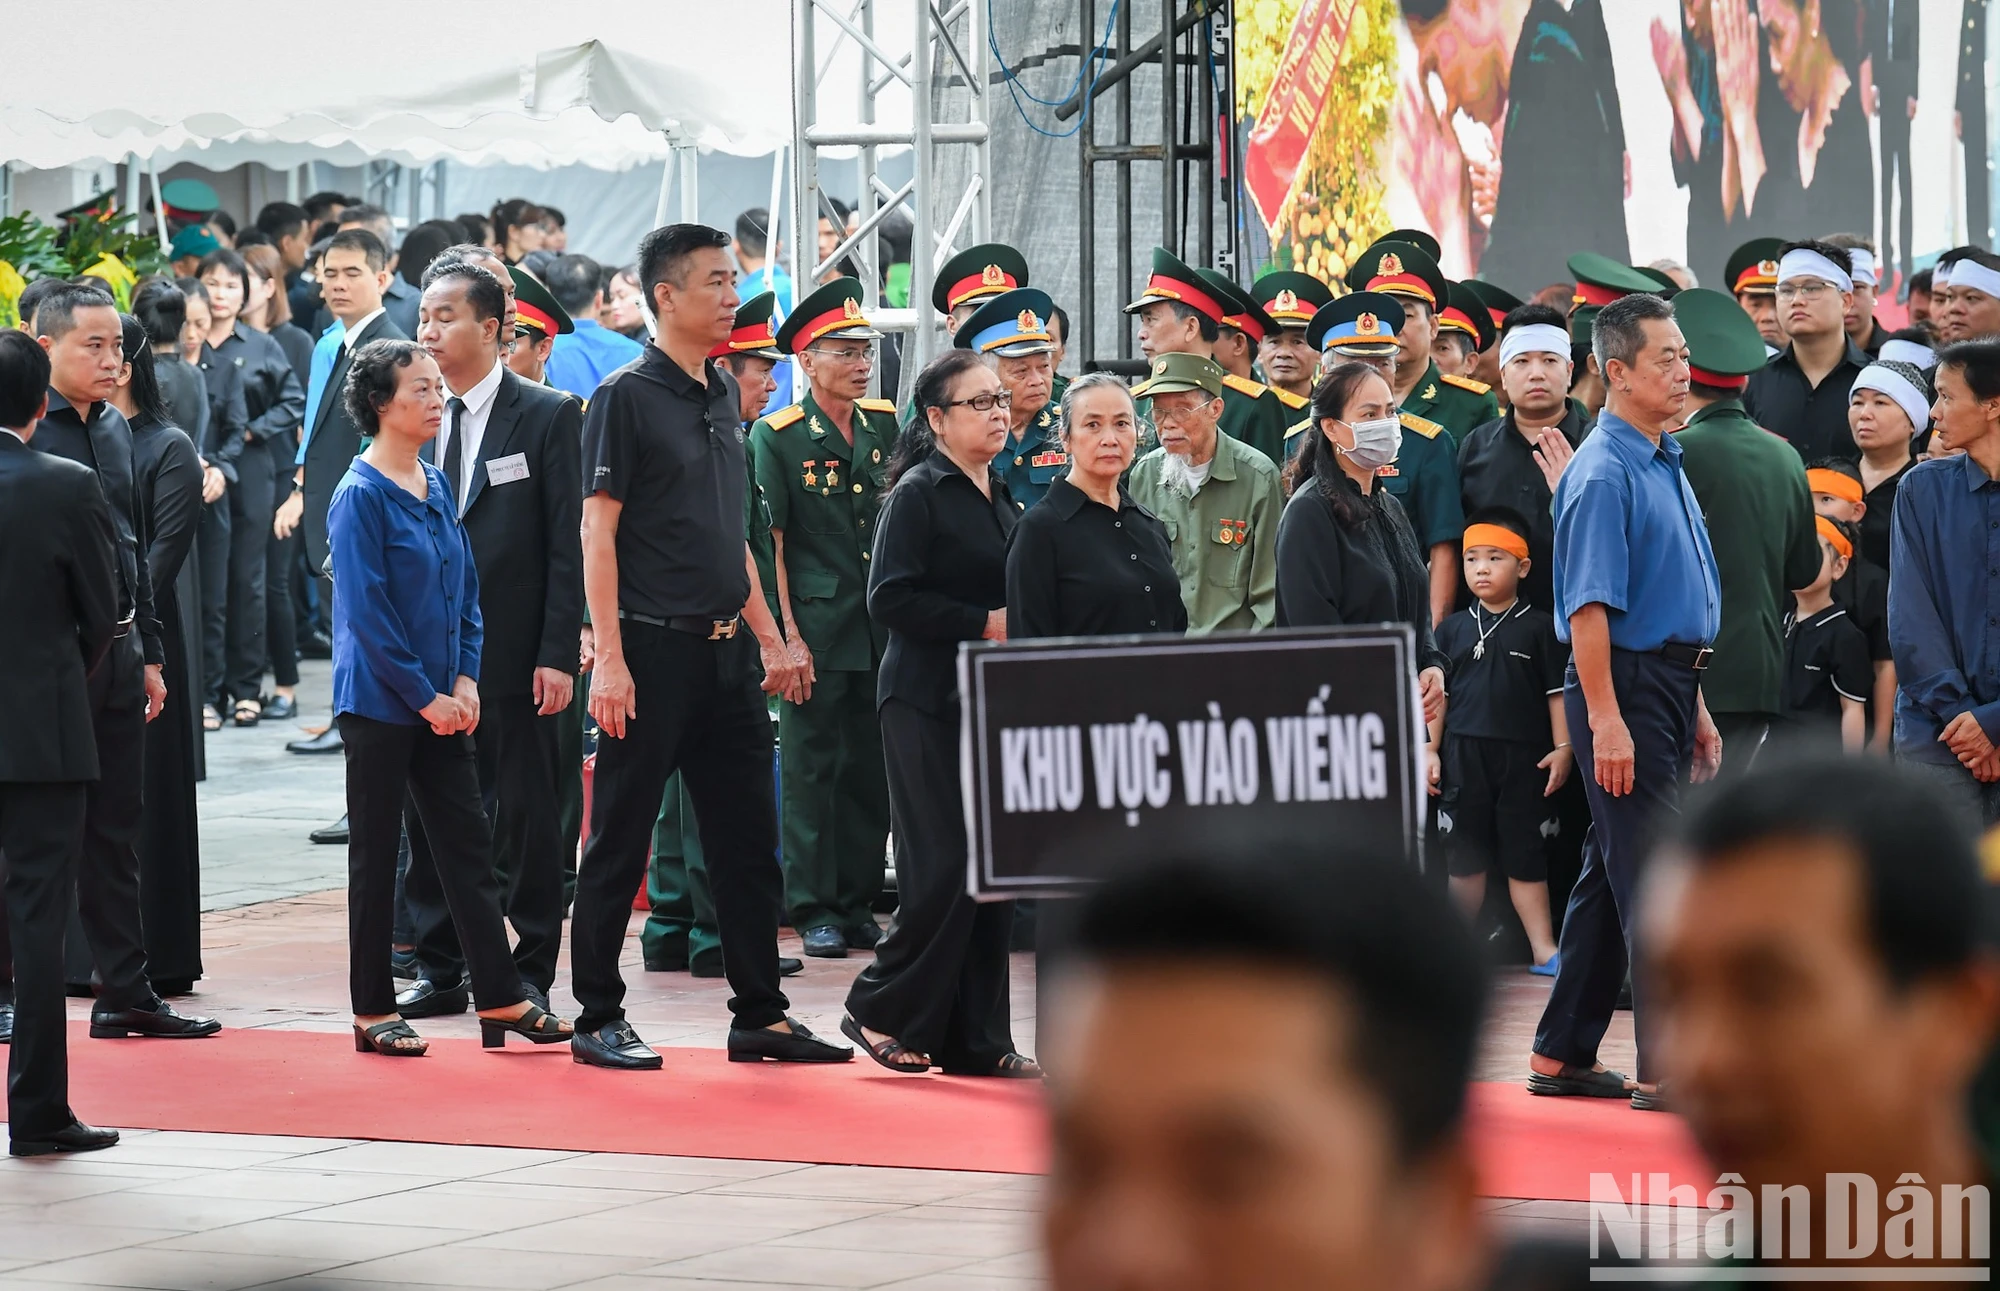 [Ảnh] Nhân dân xếp hàng dài viếng Tổng Bí thư Nguyễn Phú Trọng ở quê hương Lại Đà ảnh 6